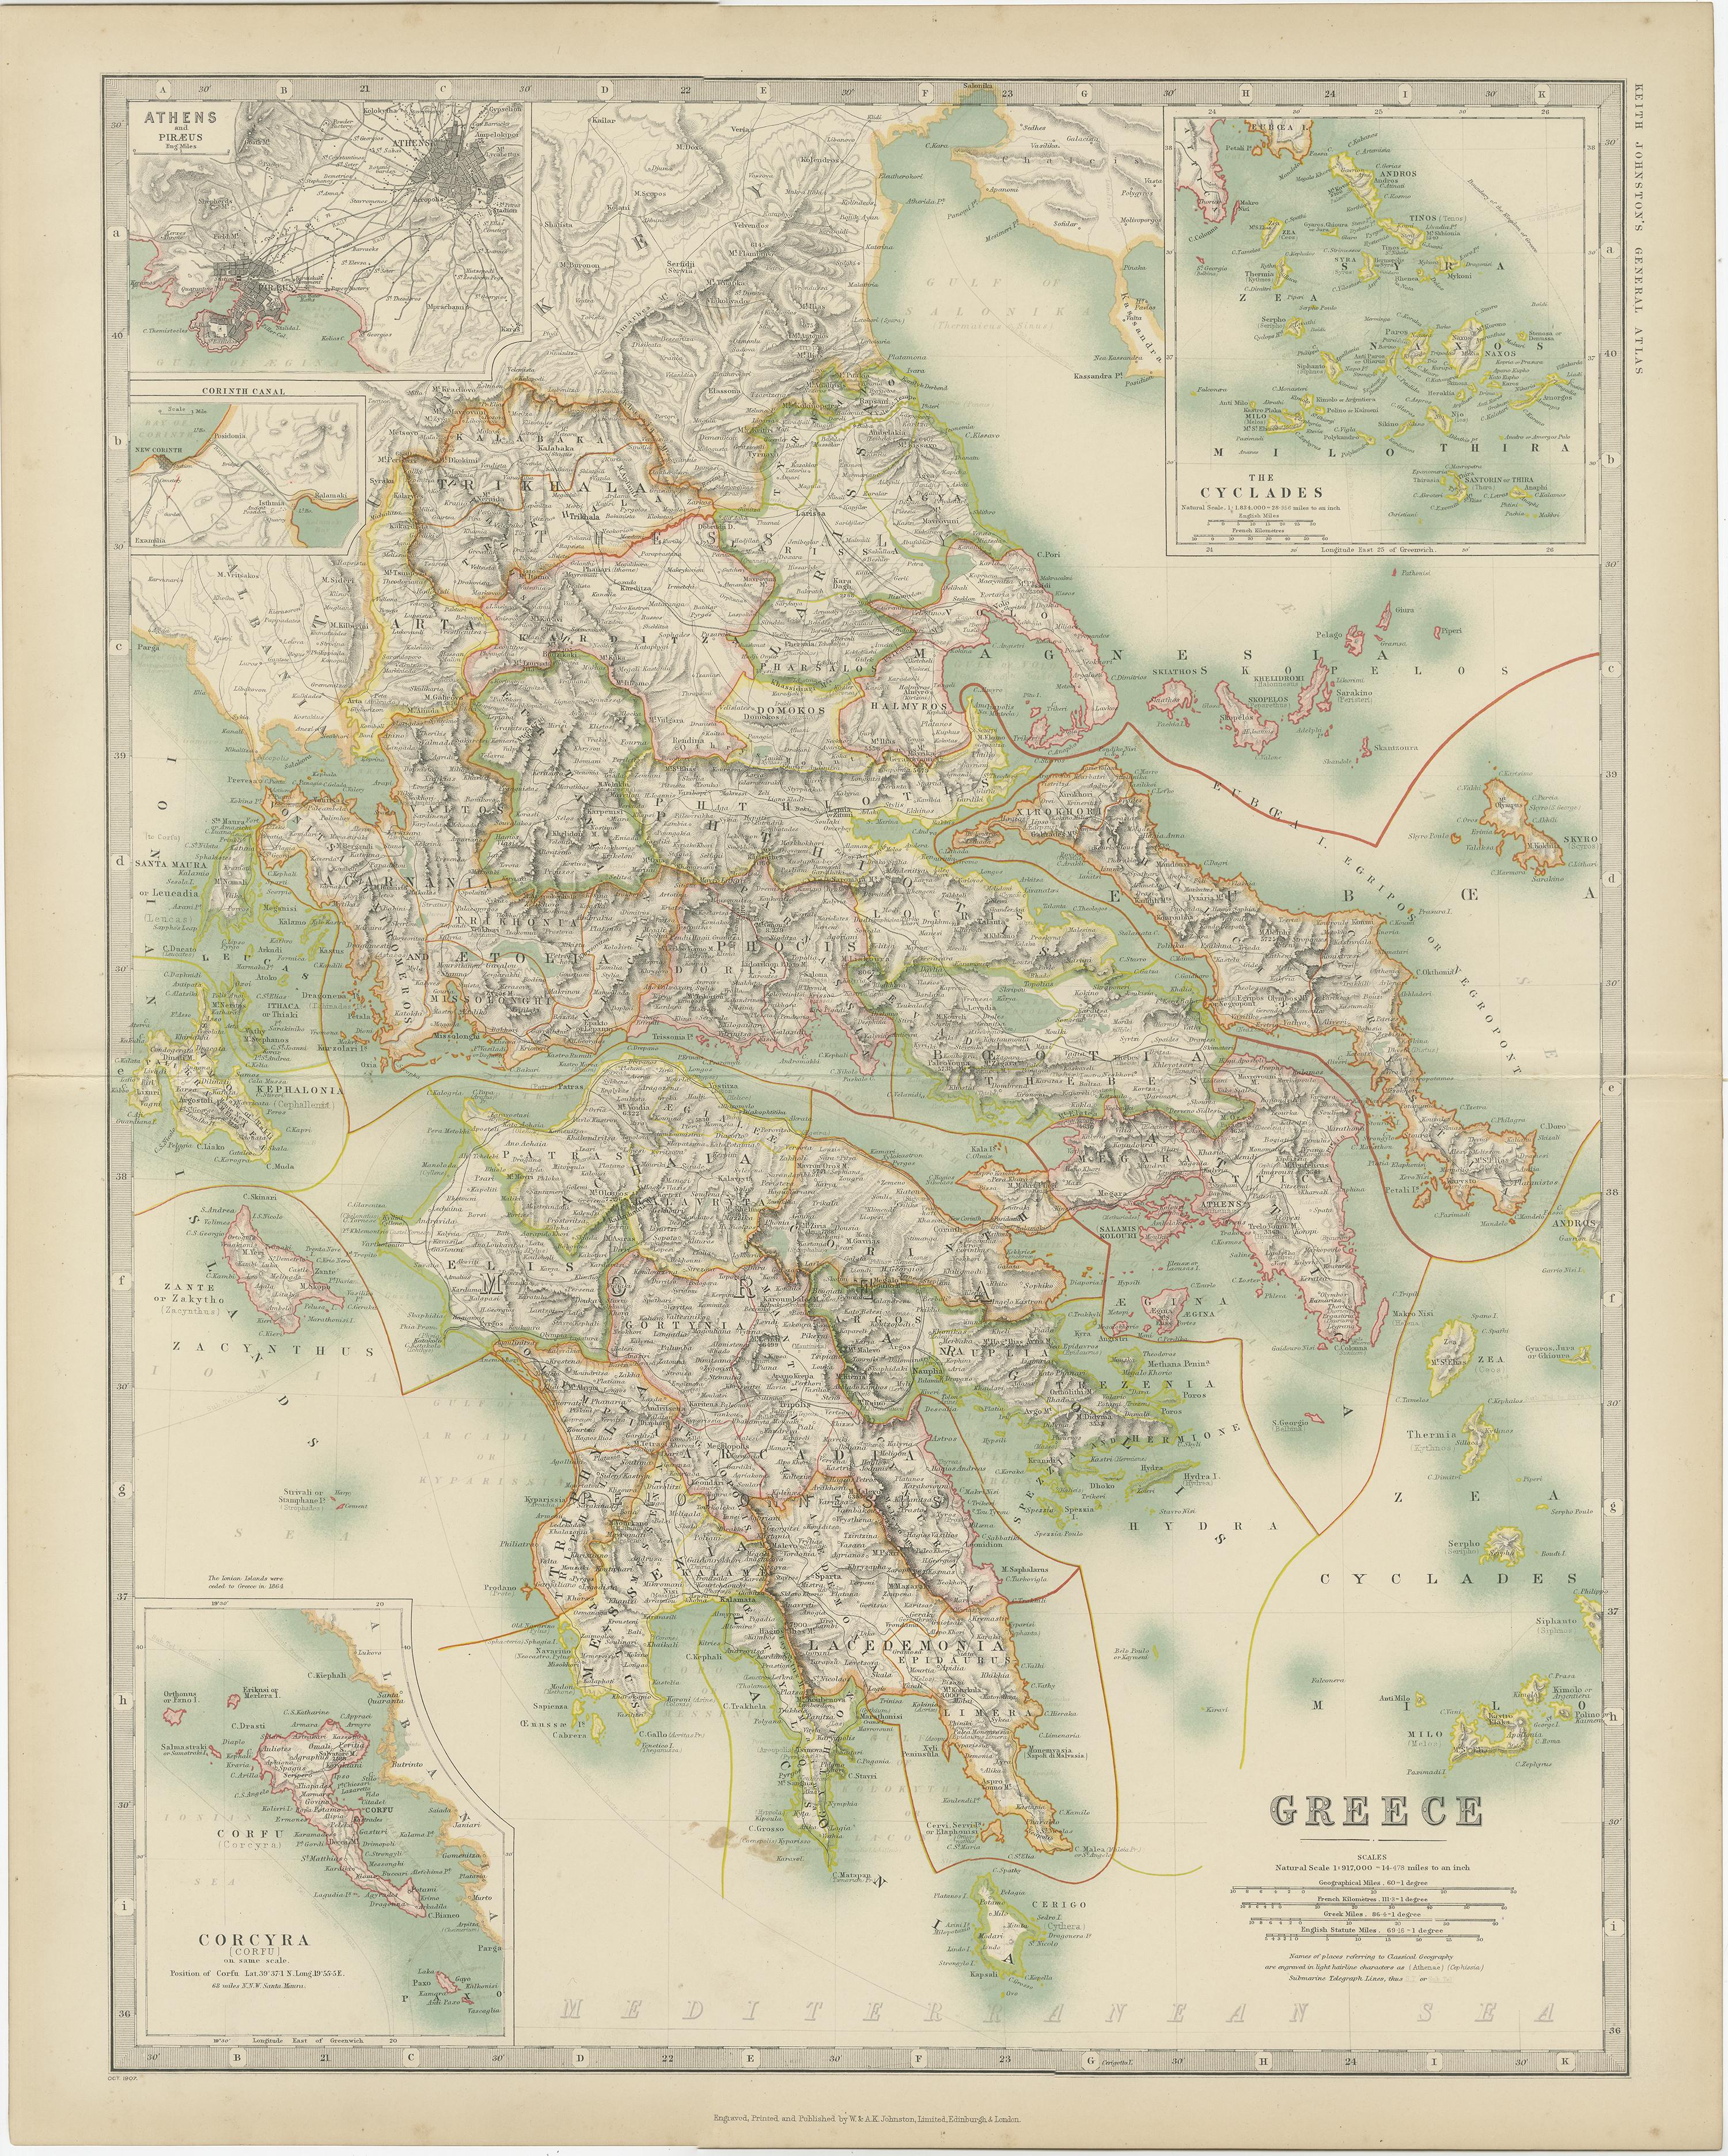 Antike Karte mit dem Titel 'Griechenland'. Original antike Landkarte von Griechenland mit Karten von Athen, dem Kanal von Korinth, Korfu und den Kykladen. Diese Karte stammt aus dem 